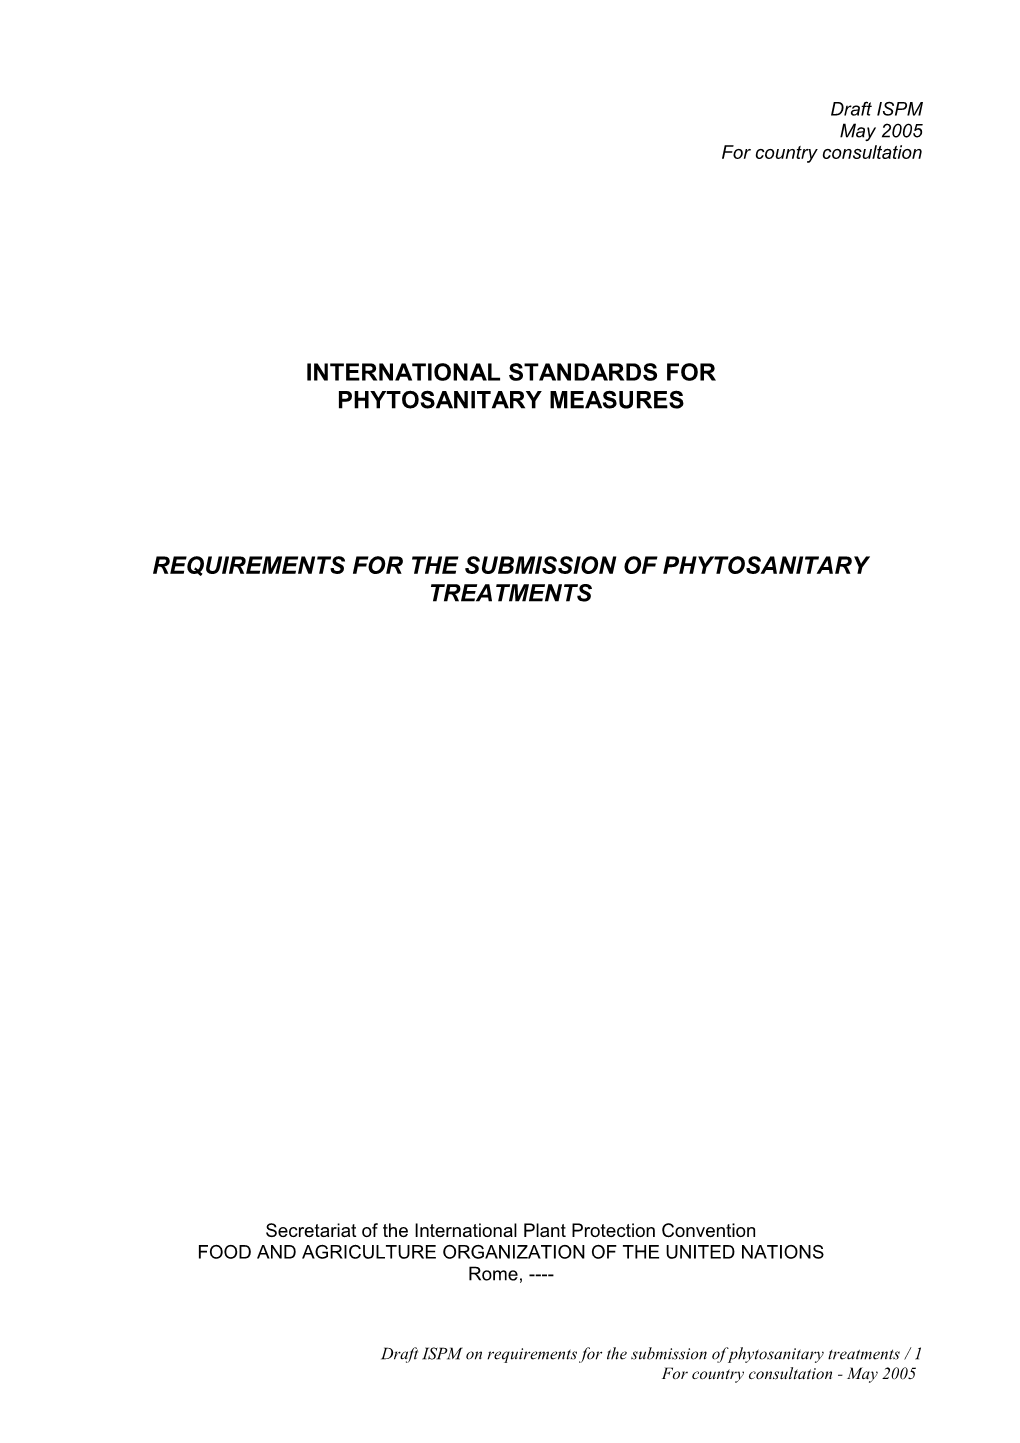 Draft ISPM Phytosanitary Treatments